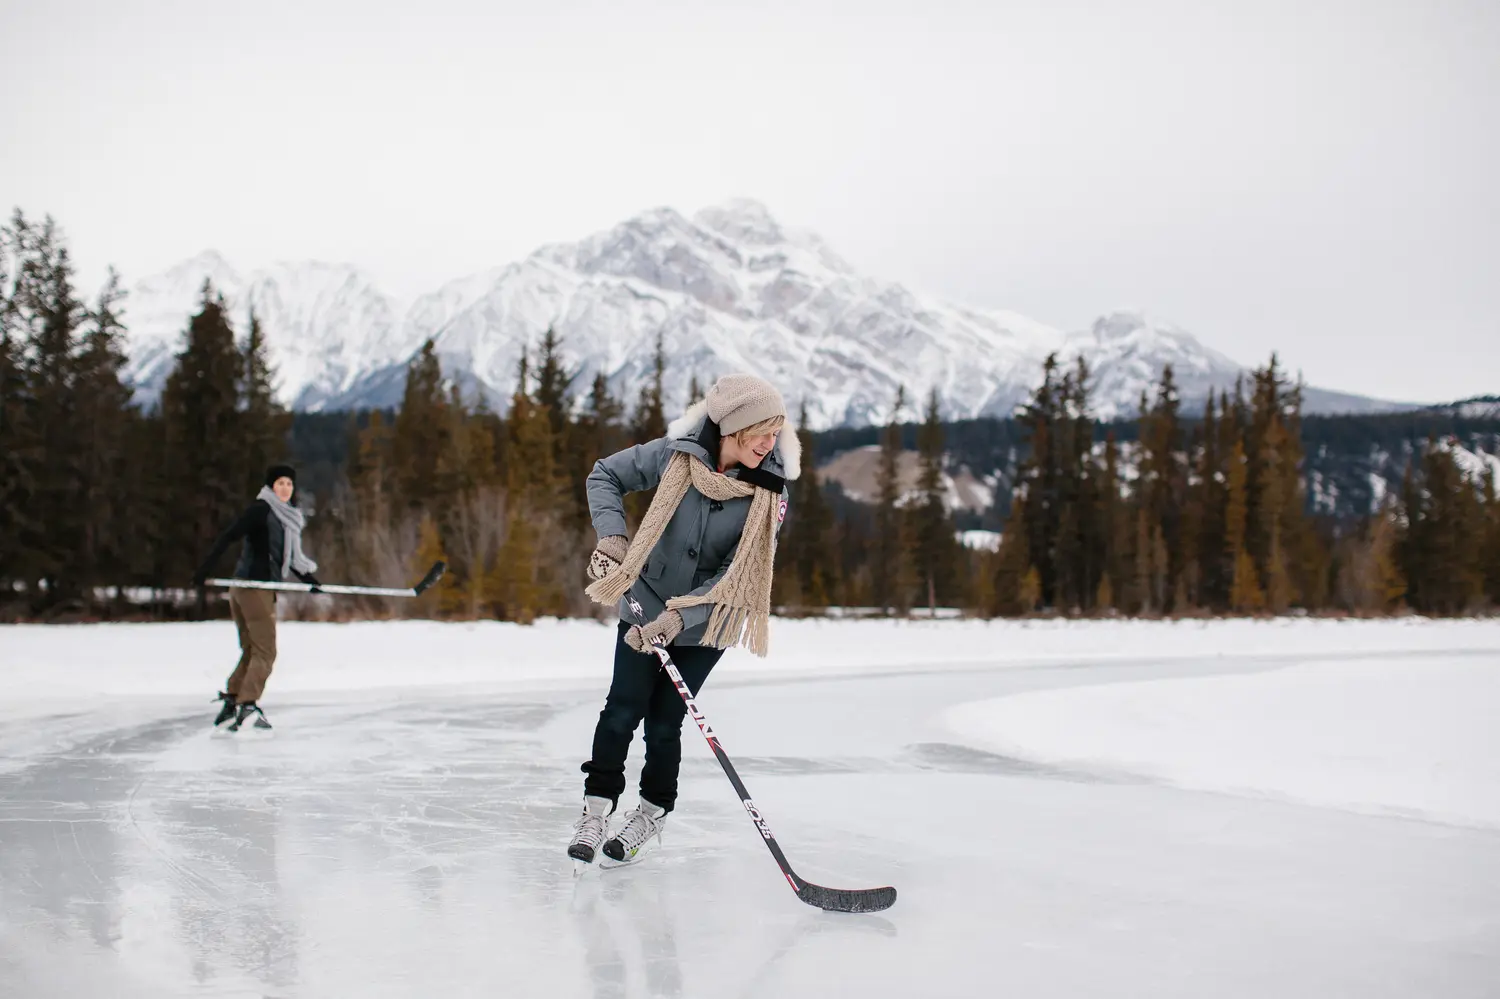 Άνθρωποι που κάνουν πατινάζ στον πάγο στη λίμνη Mildred στο Jasper, Καναδάς